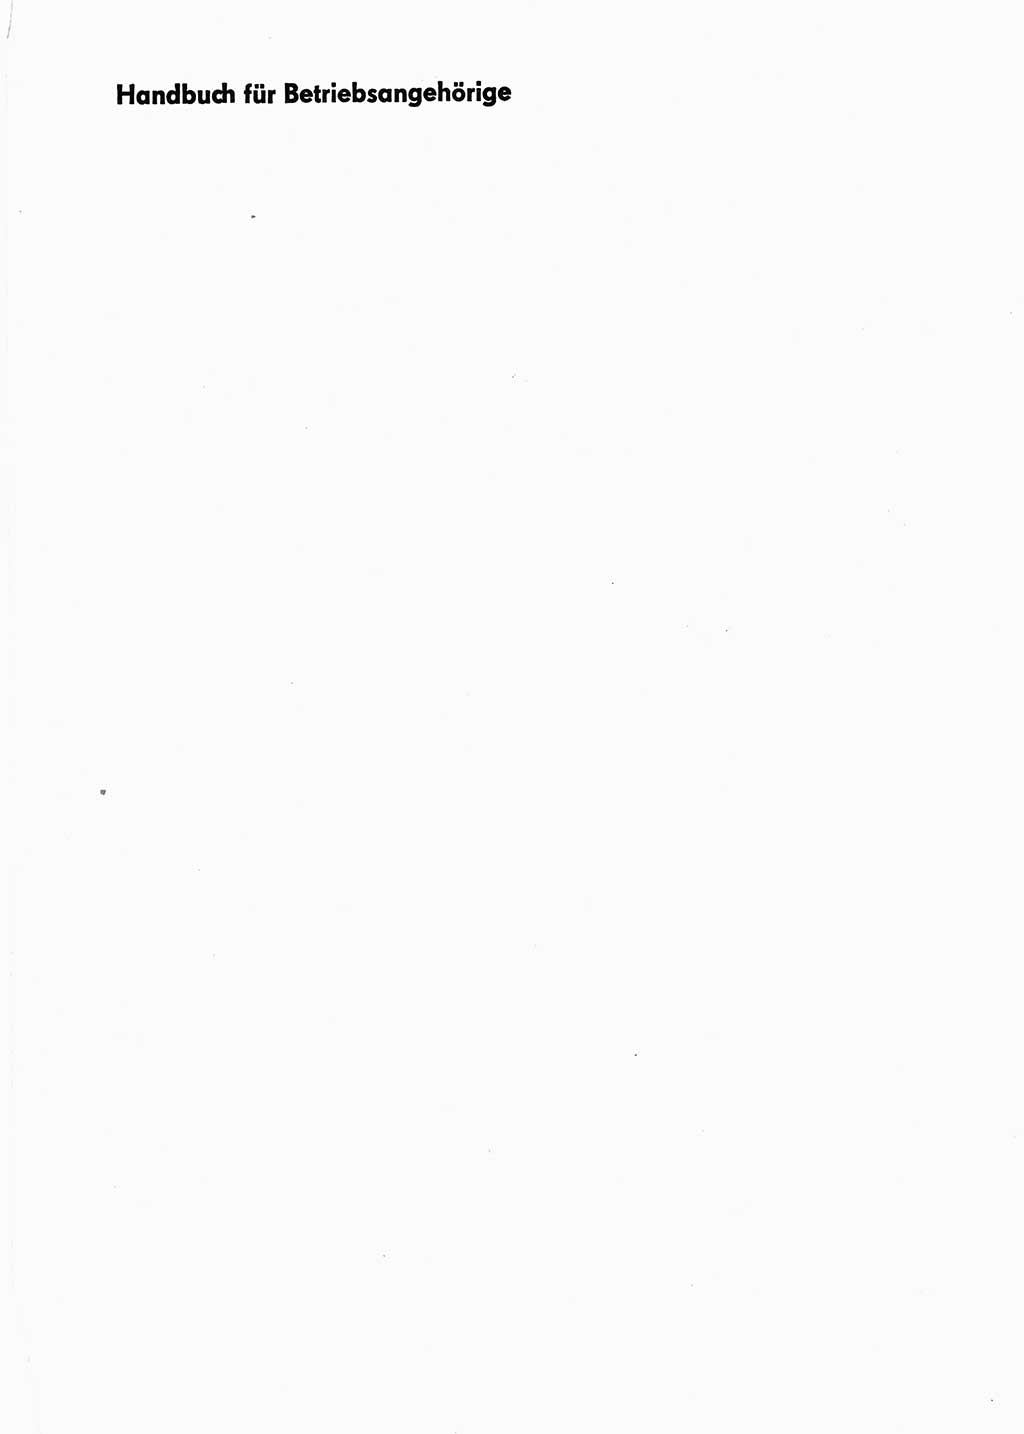 Handbuch für Betriebsangehörige, Abteilung Strafvollzug (SV) [Ministerium des Innern (MdI) Deutsche Demokratische Republik (DDR)] 1981, Seite 1 (Hb. BA Abt. SV MdI DDR 1981, S. 1)